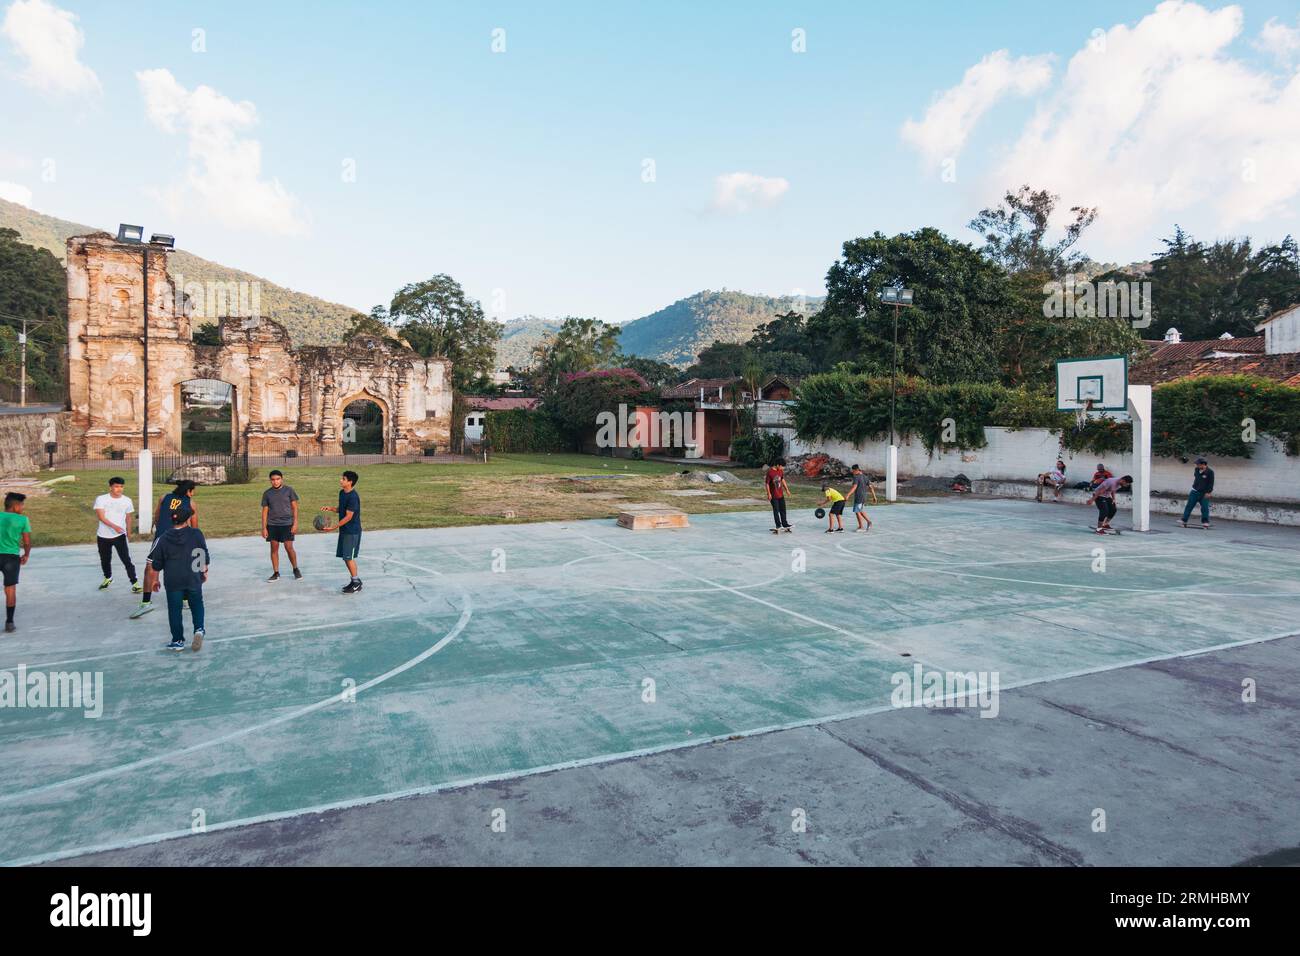 Les enfants jouent au basket-ball sur un court public, avec les ruines d'un bâtiment colonial espagnol reposant derrière, à Antigua Guatemala Banque D'Images